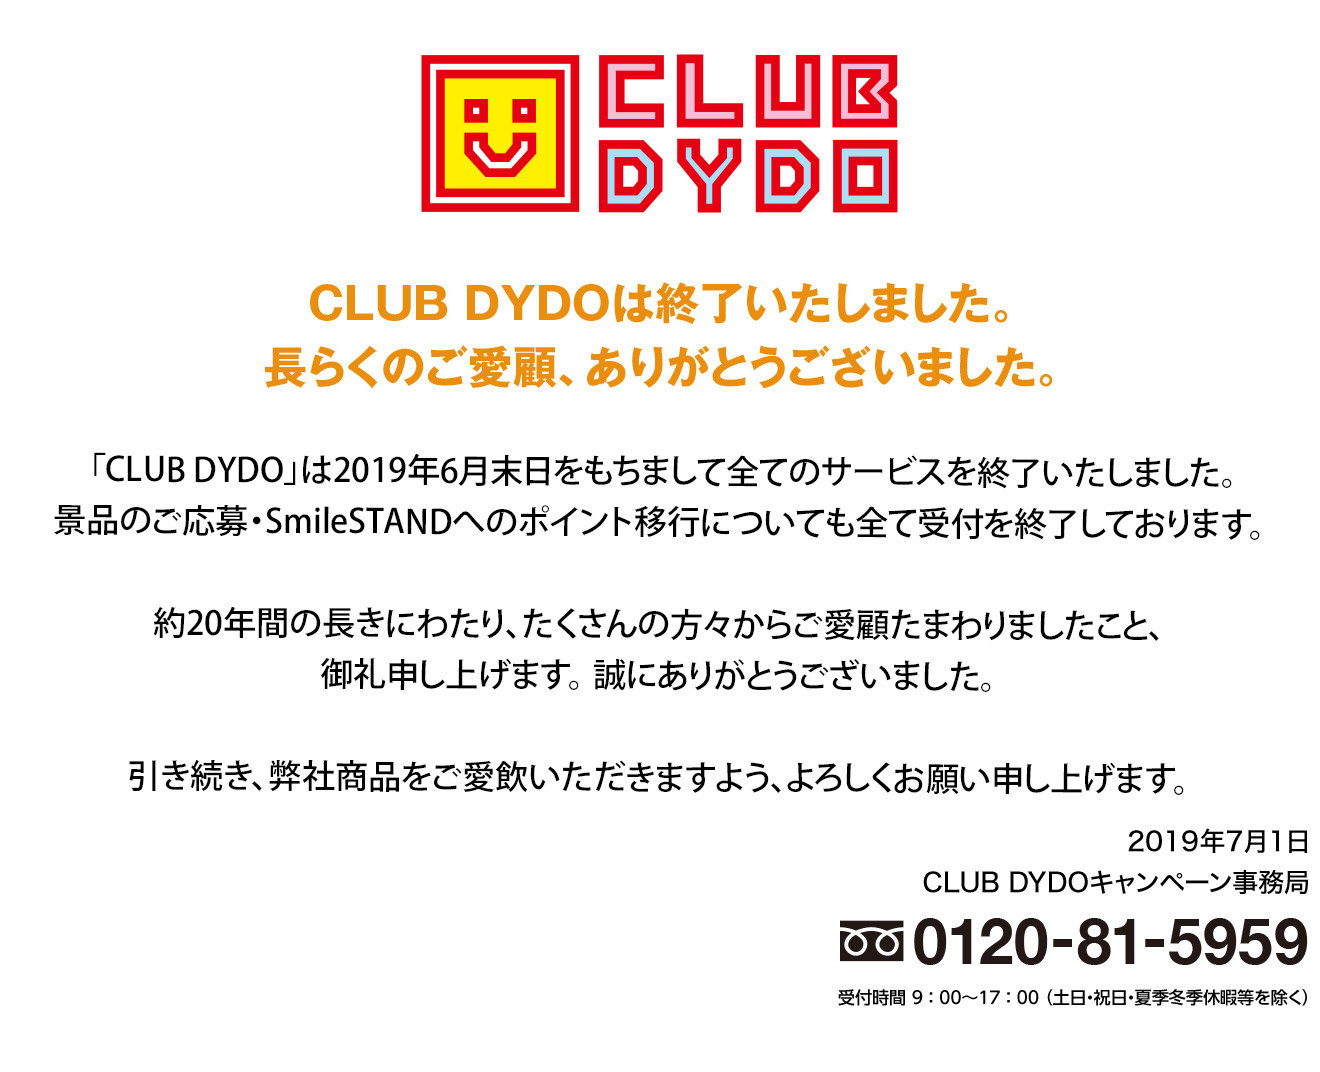 CLUB DYDOは終了いたしました。長らくのご愛顧、ありがとうございました。「CLUB DYDO」は2019年6月末日をもちまして全てのサービスを終了いたしました。景品のご応募・SmileSTANDへのポイント移行についても全て受付を終了しております。約20年間の長きにわたり、たくさんの方々からご愛顧たまわりましたこと、御礼申し上げます。 誠にありがとうございました。引き続き、弊社商品をご愛飲いただきますよう、よろしくお願い申し上げます。